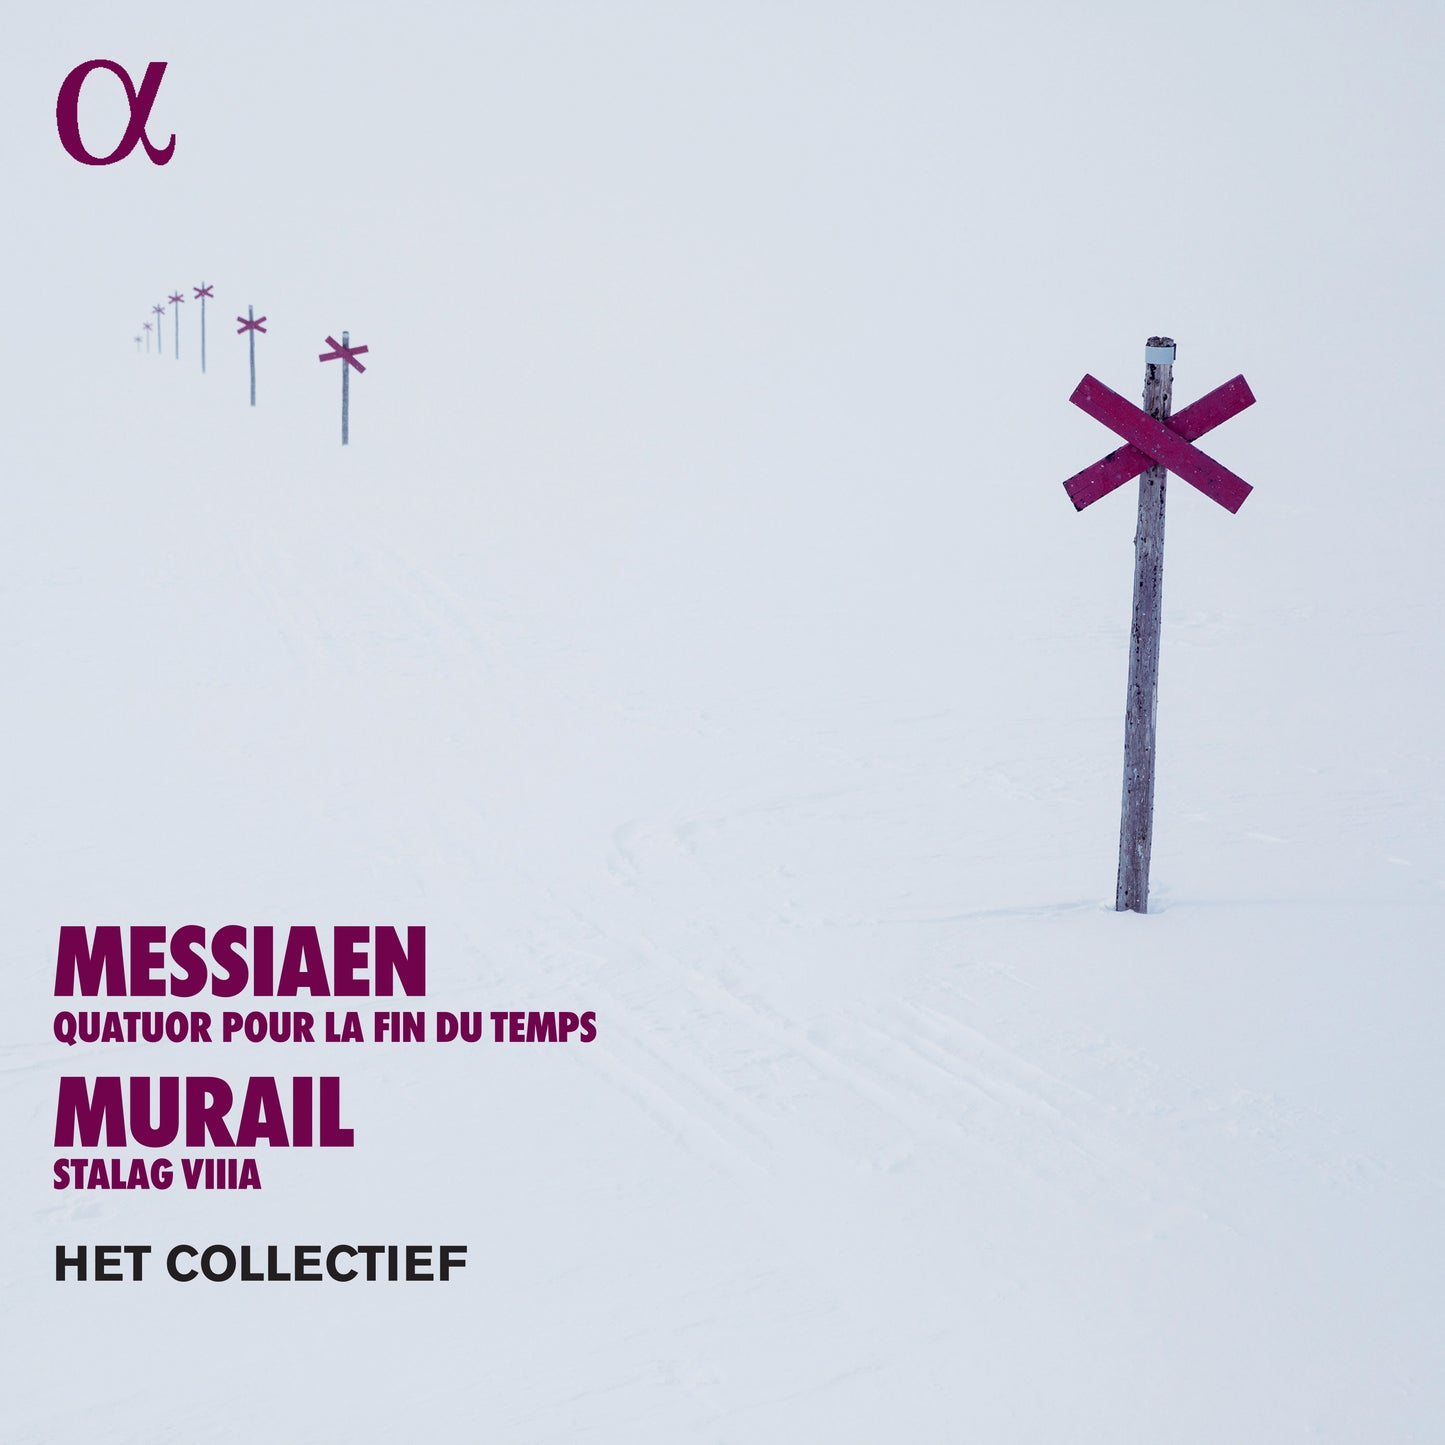 Messiaen: Quatuor Pour La Fin Du Temps; Murail: Stalag Viiia  Het Collectief